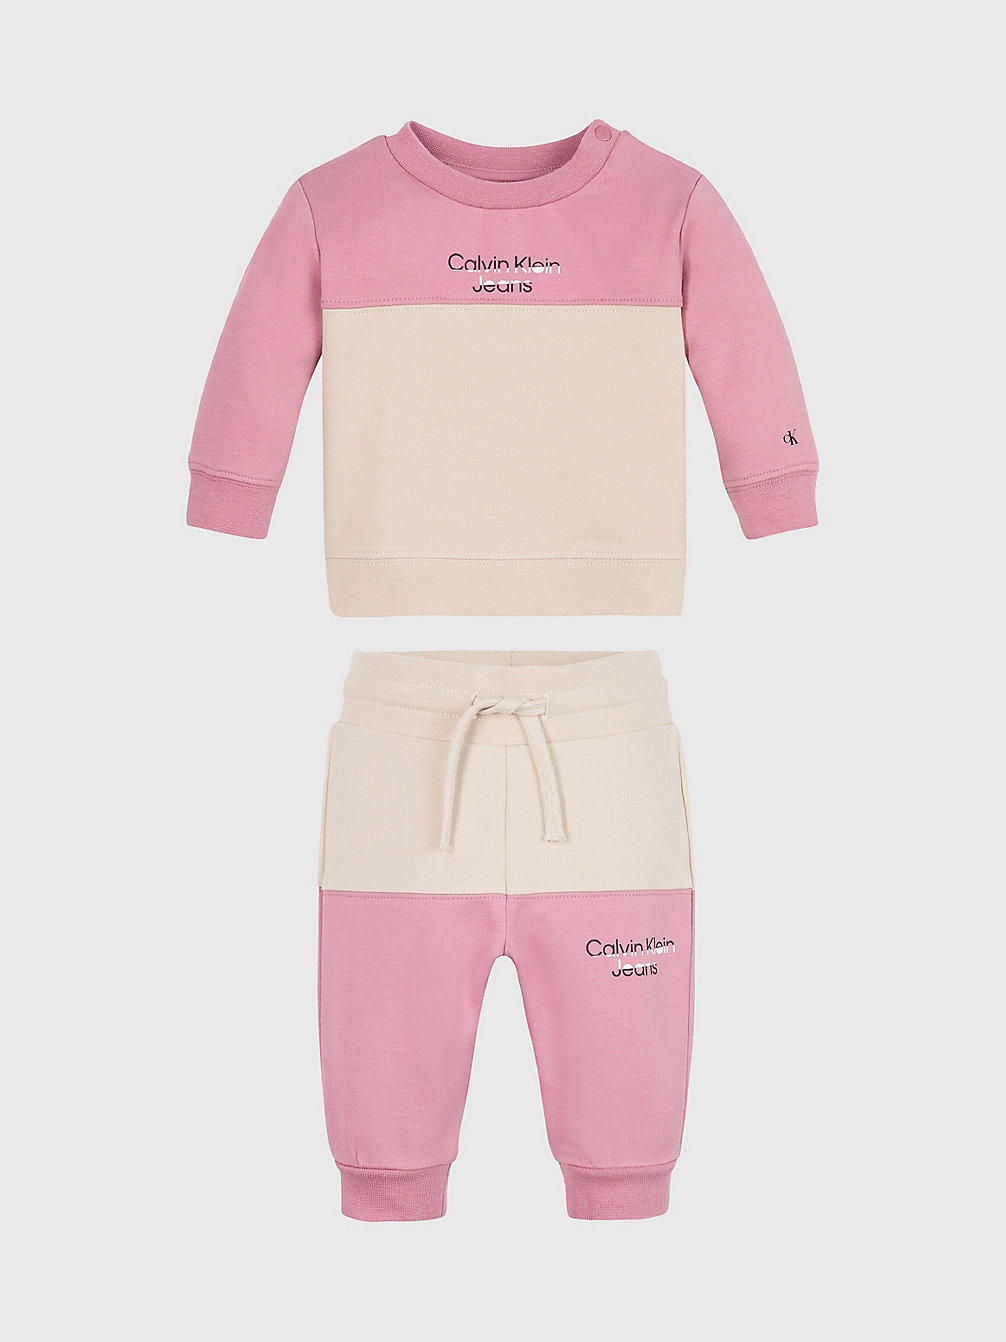 FOXGLOVE Survêtement Color-Block Pour Nouveau-Né undefined newborn Calvin Klein